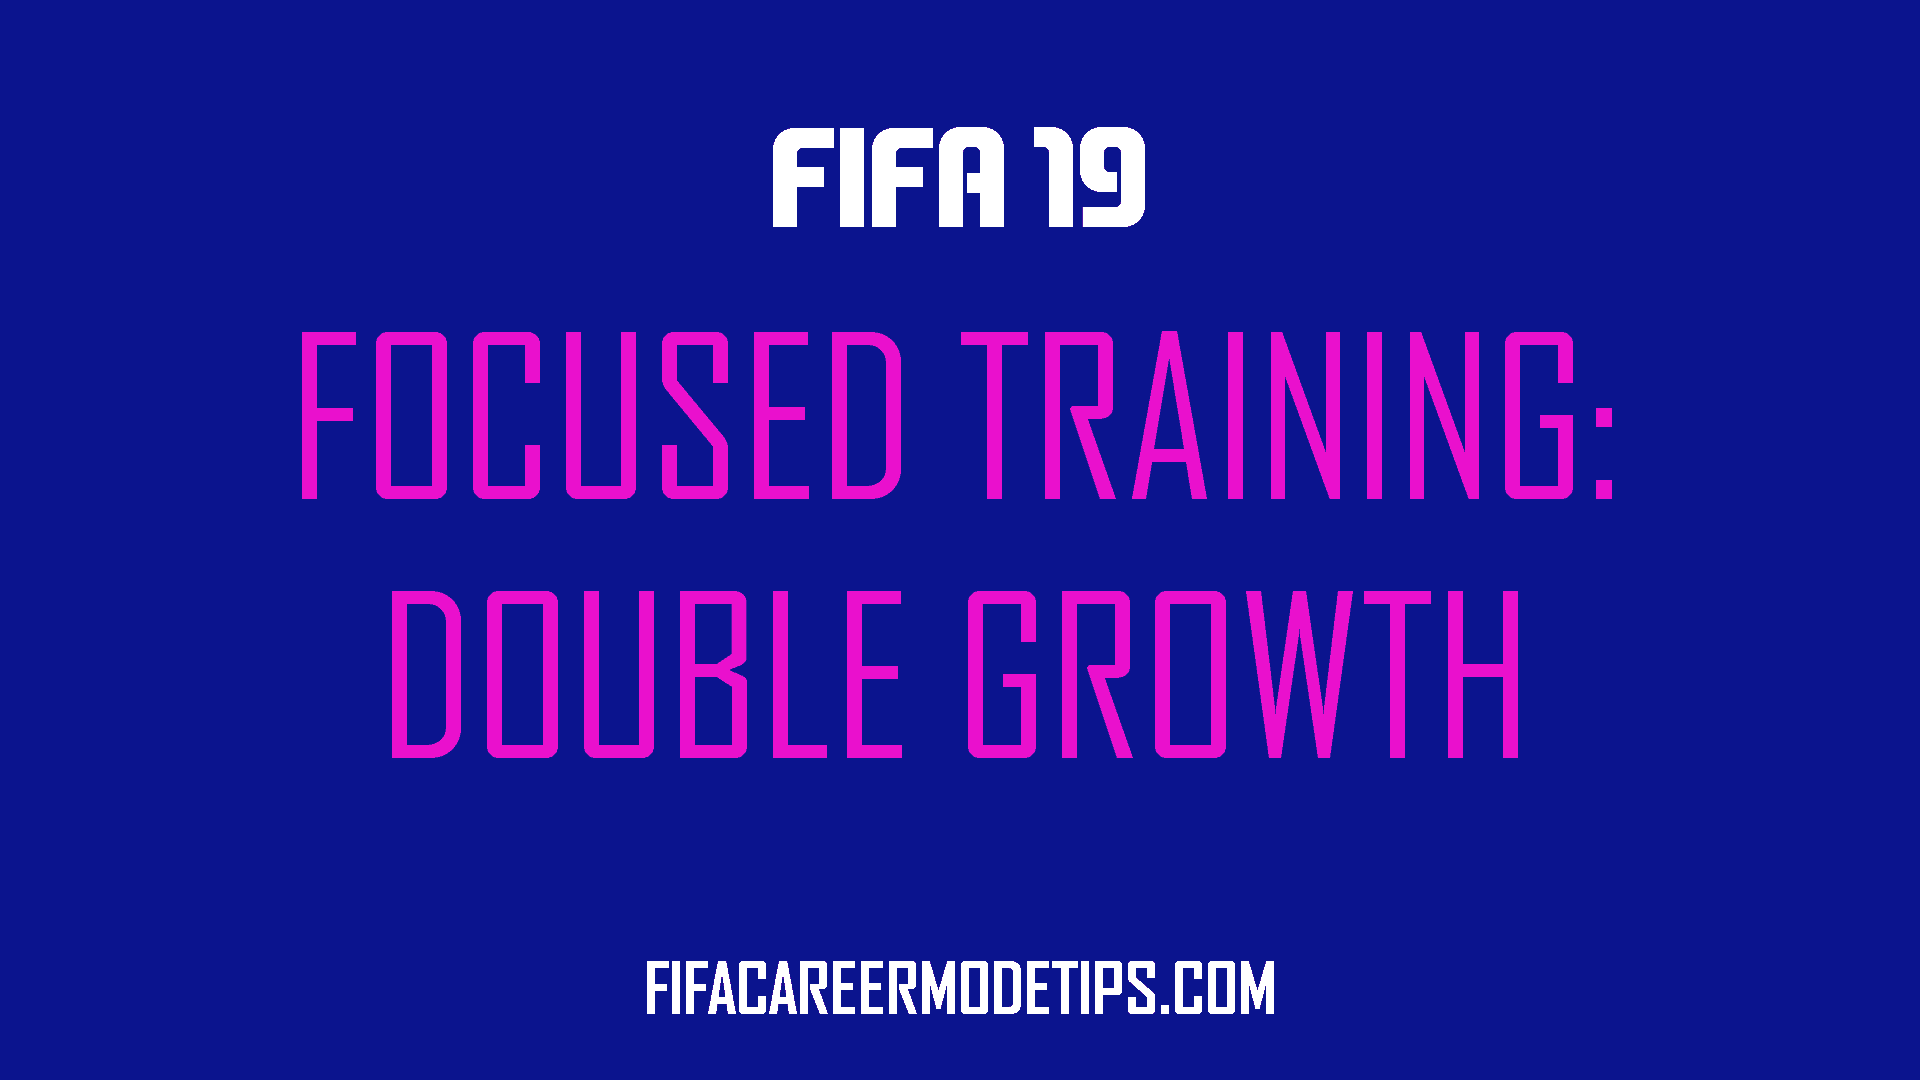 Focused Training in FIFA 19